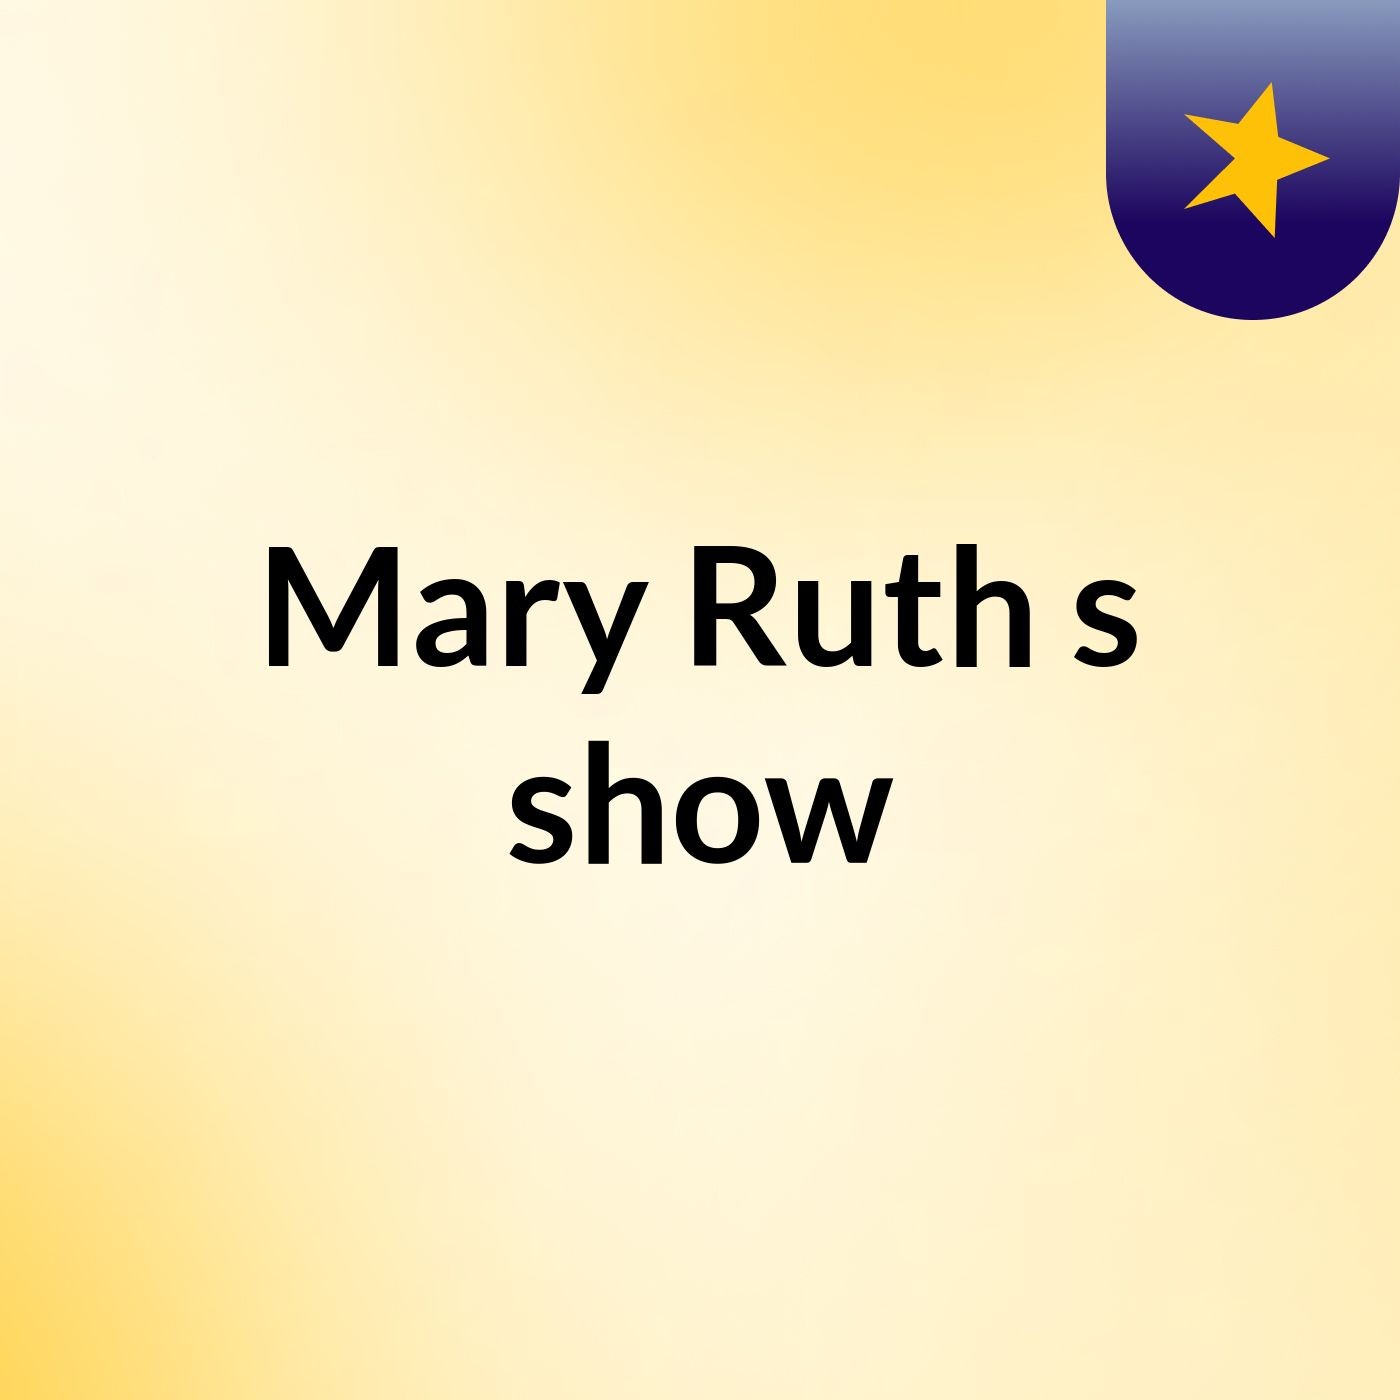 Mary Ruth's show